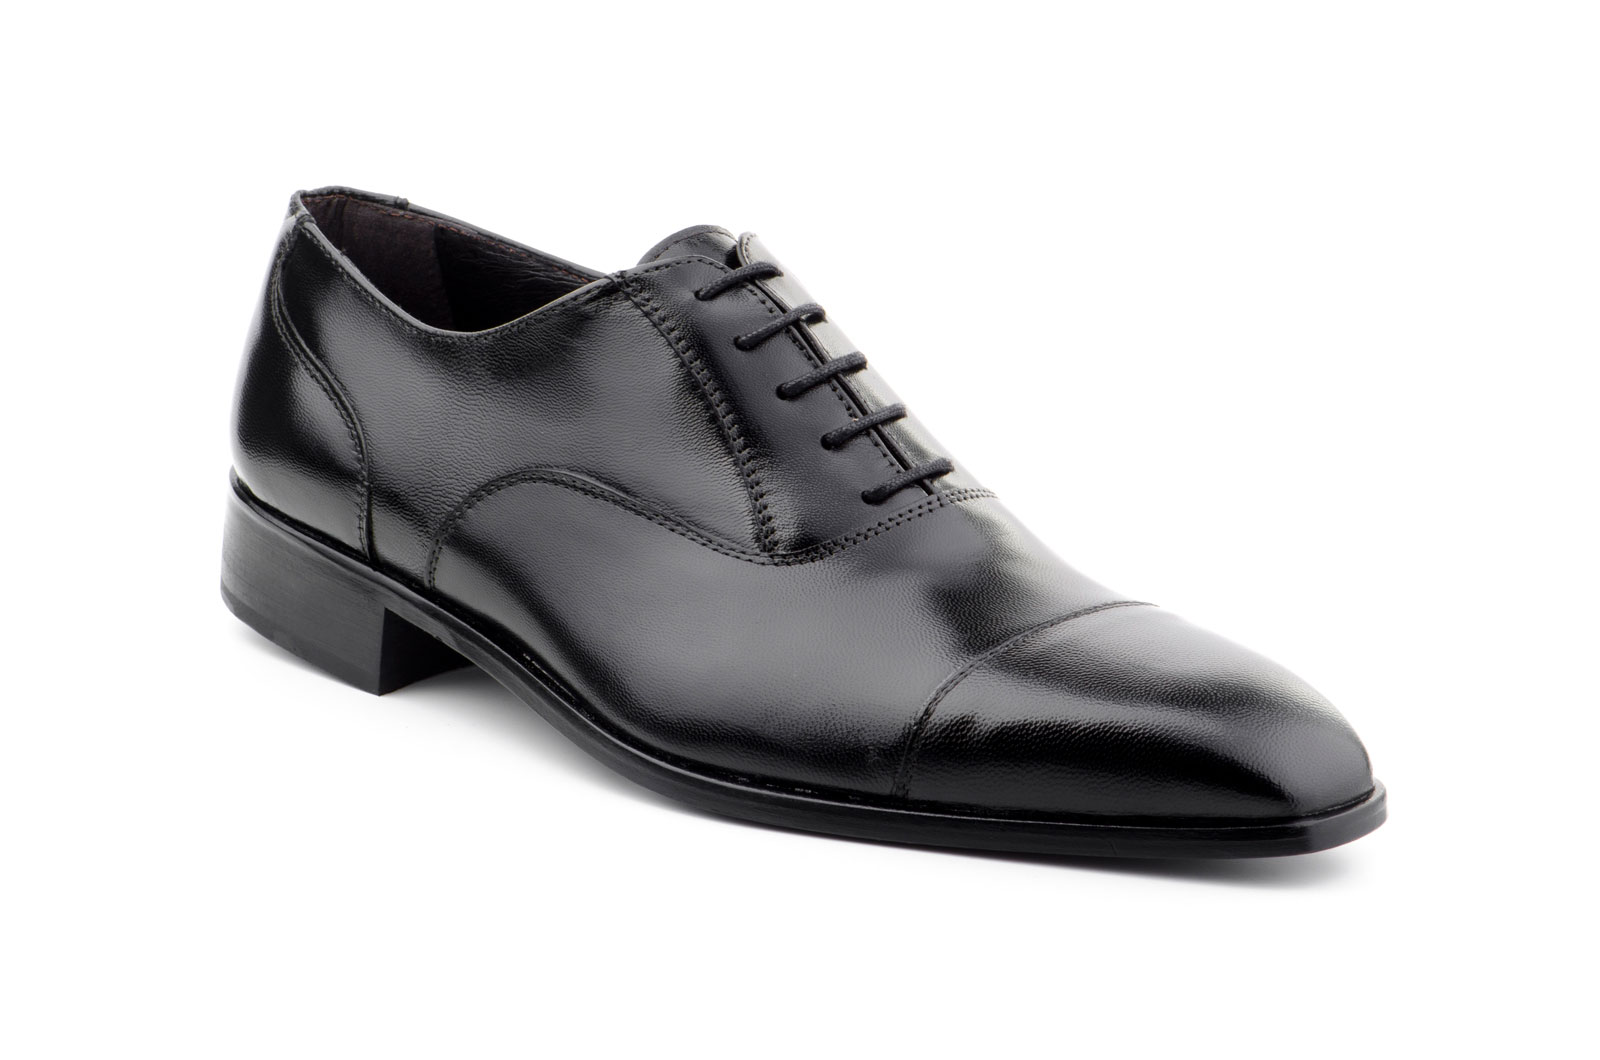 Zapatos Hombre Piel Negro Cordones Suela de Cuero Italiano  -  Ref. 4003 Negro